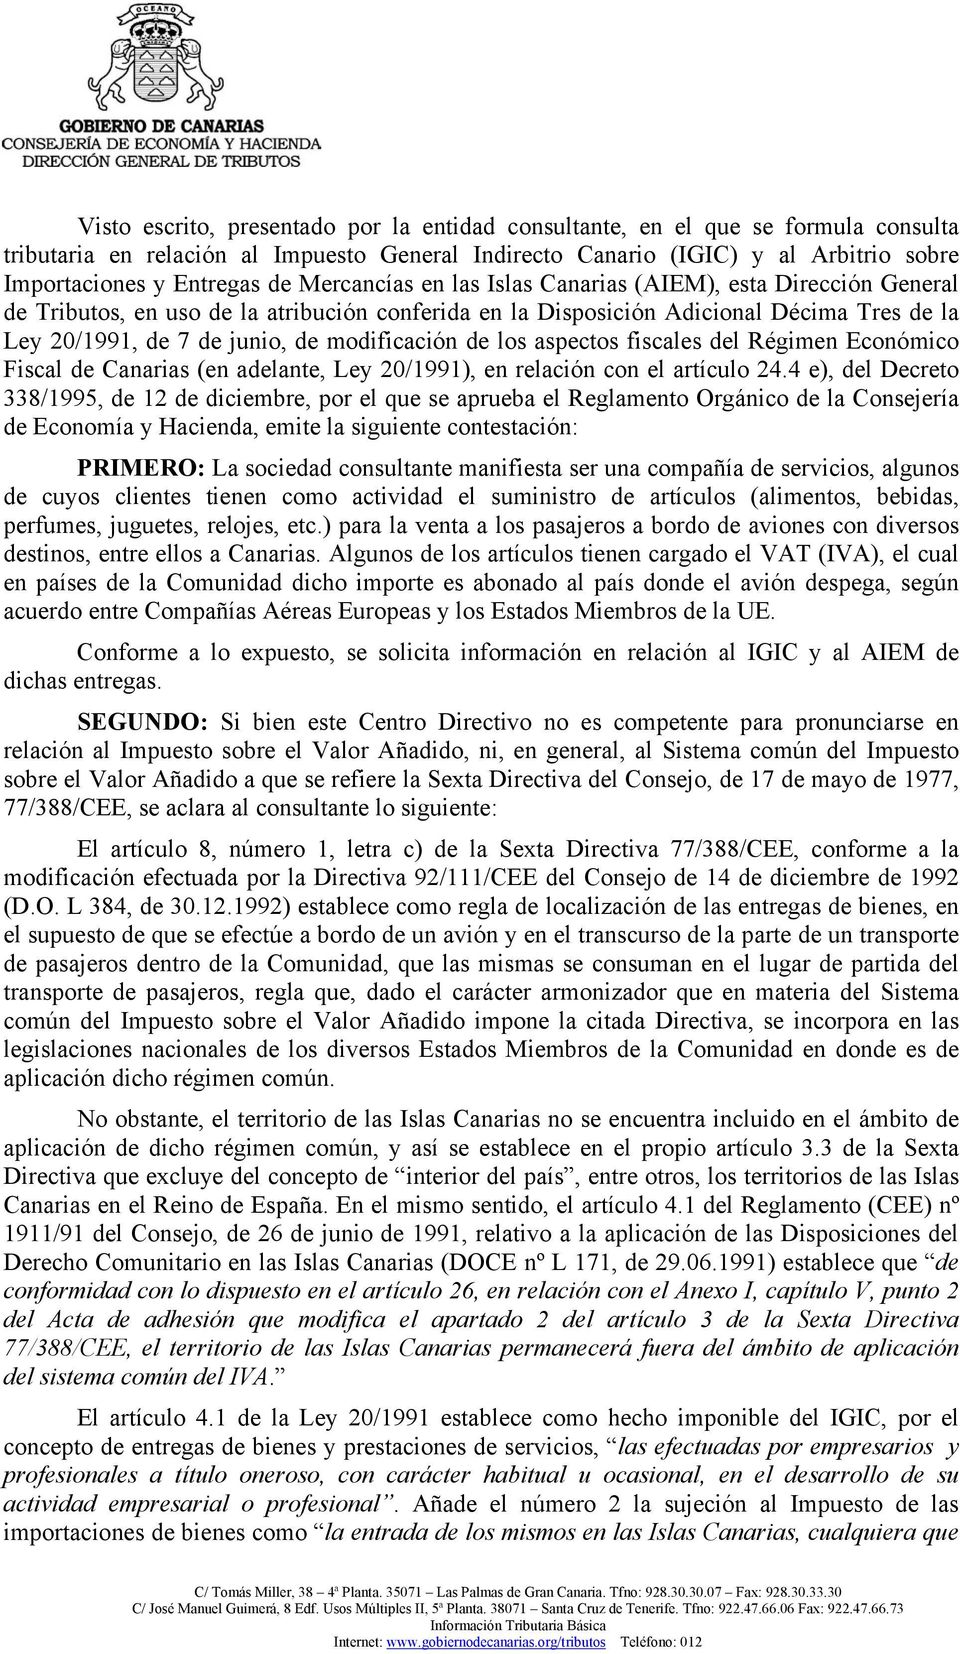 modificación de los aspectos fiscales del Régimen Económico Fiscal de Canarias (en adelante, Ley 20/1991), en relación con el artículo 24.